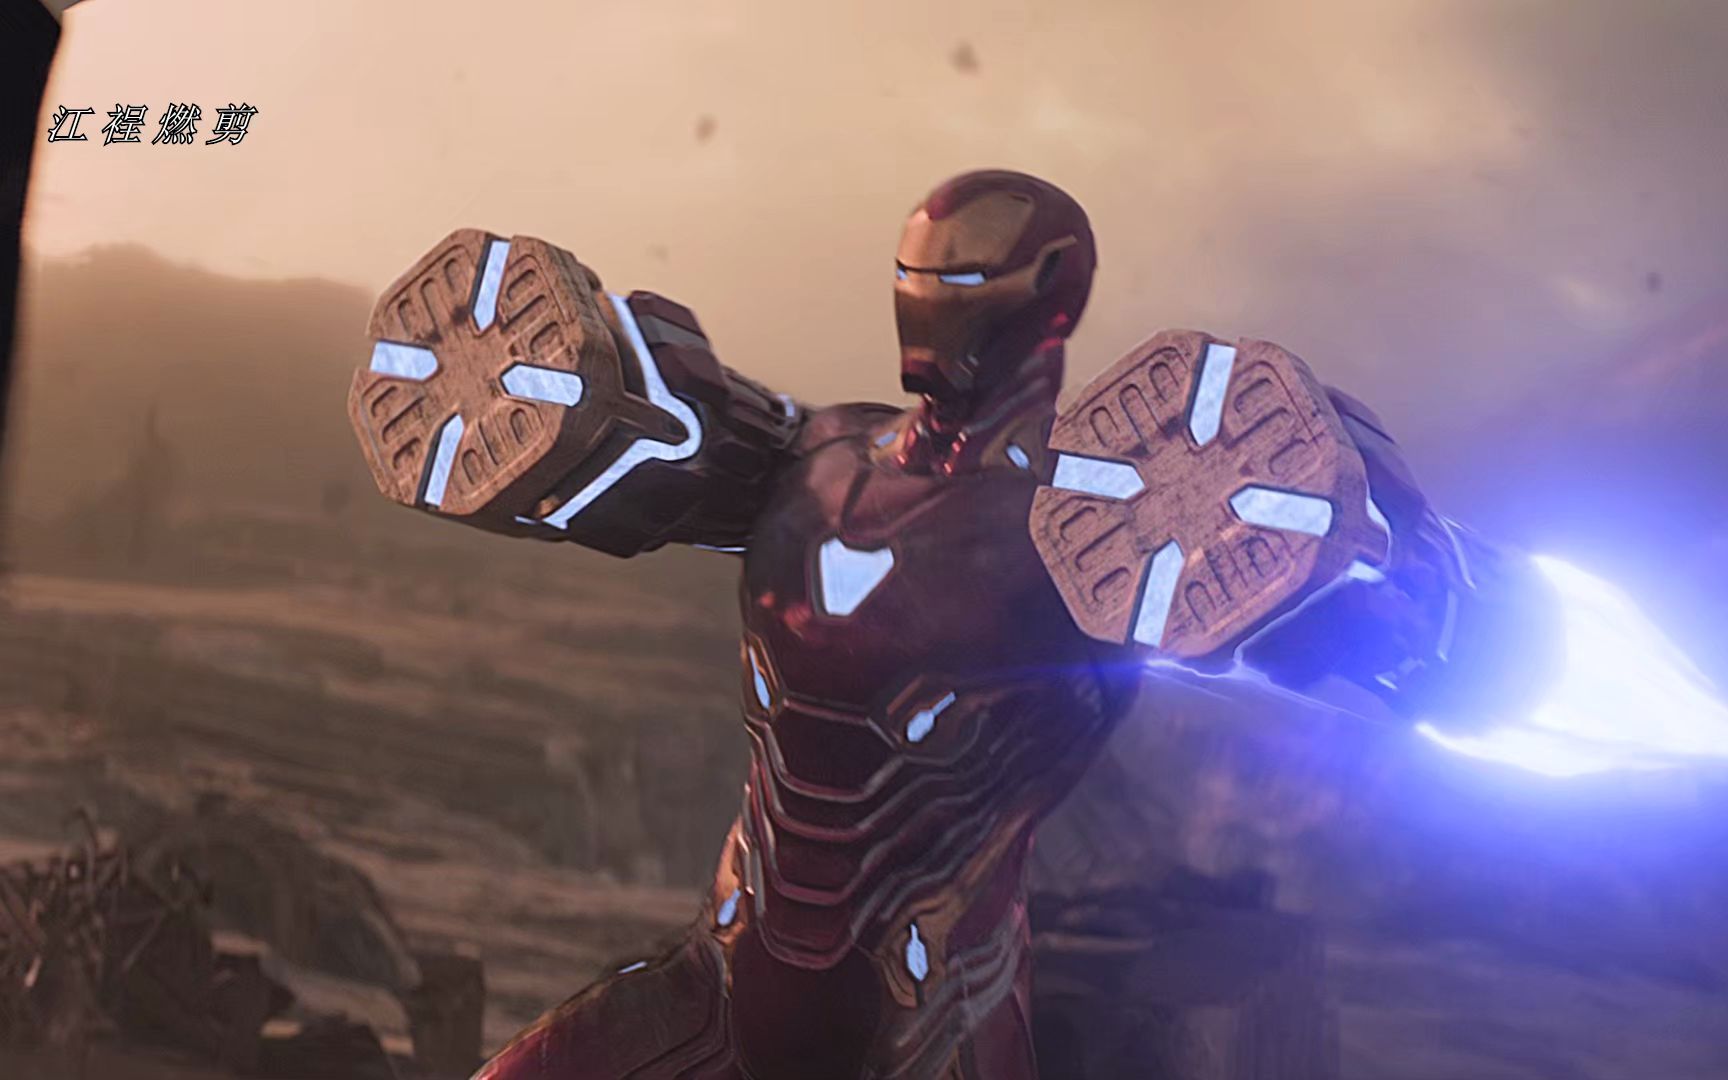 【4k60帧】钢铁侠的纳米科技战甲到底能变出多少种武器?